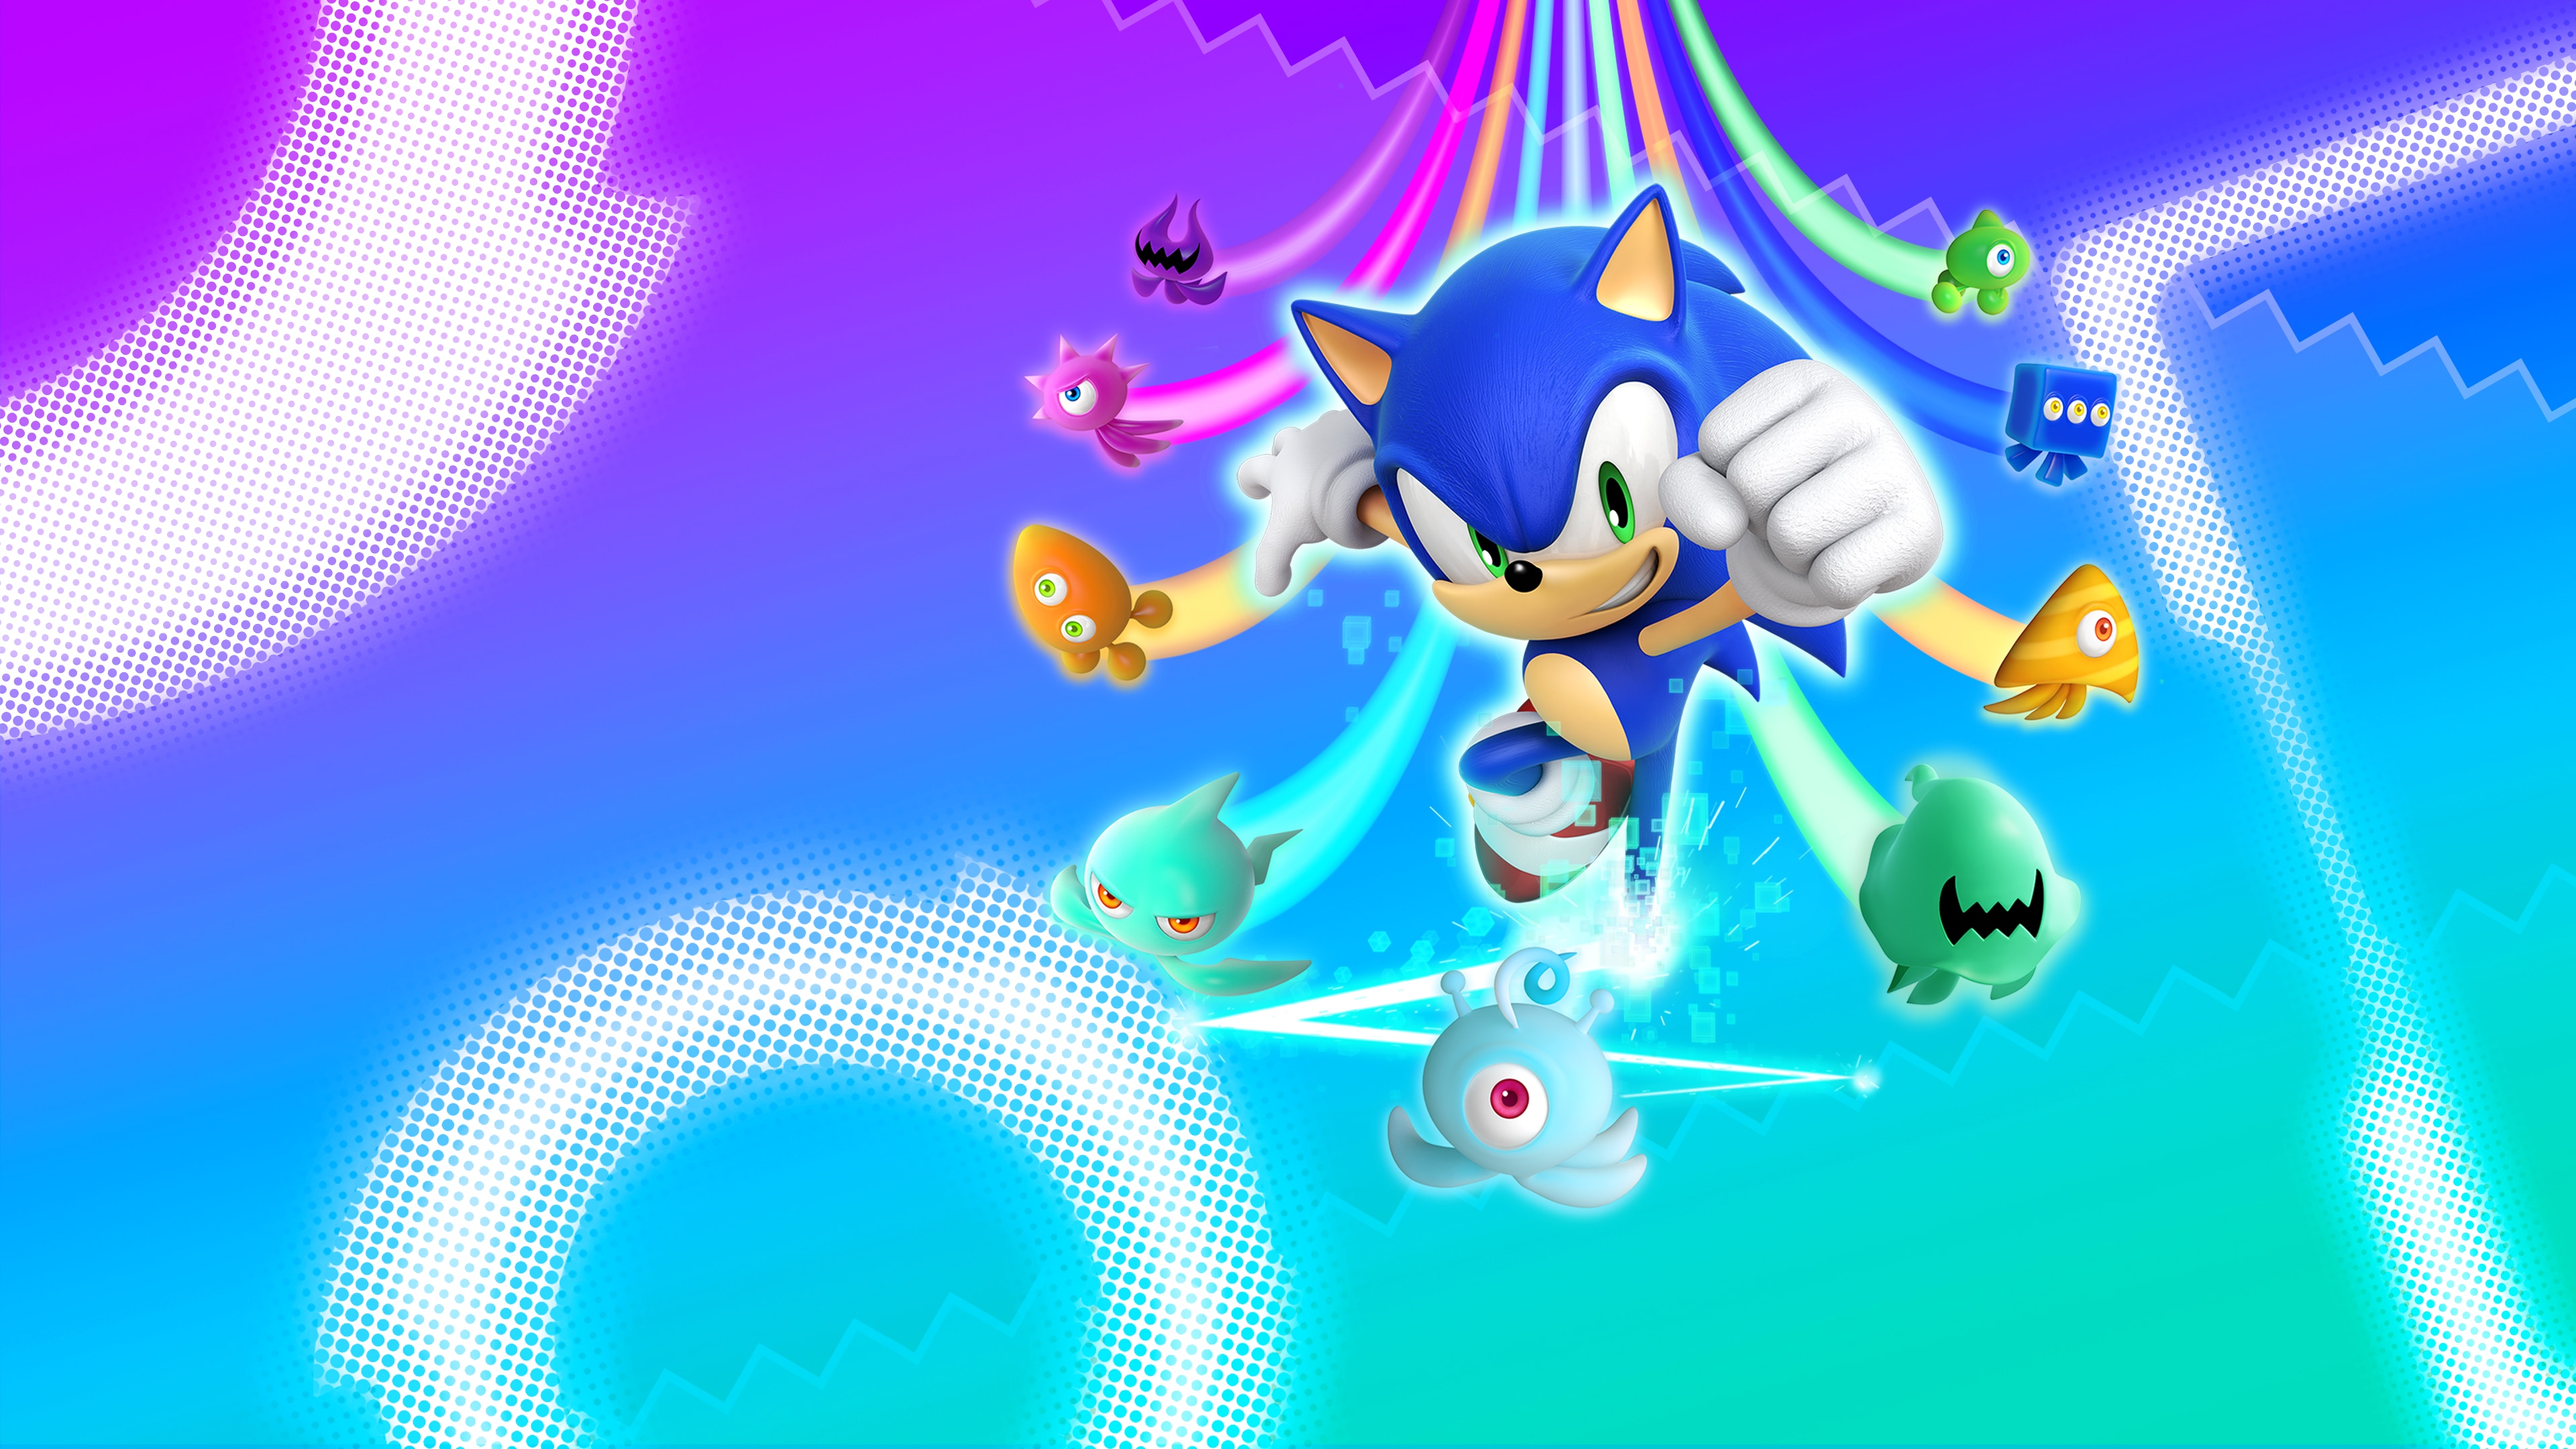 Los mejores fondos de pantalla de Sonic Colors: Ultimate para la pantalla del teléfono